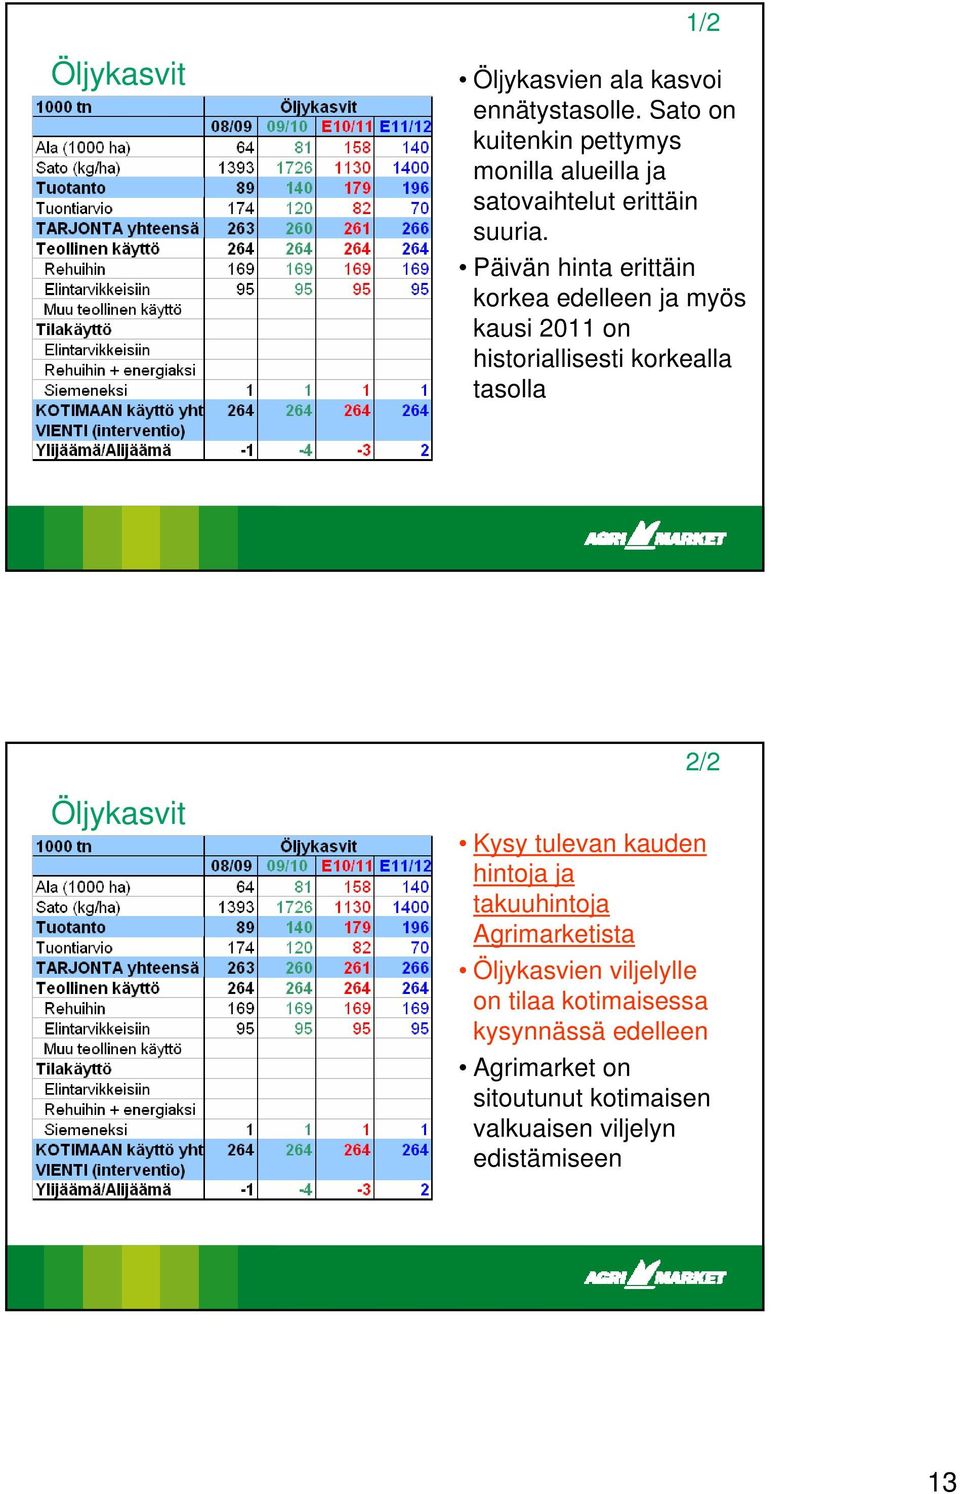 Päivän hinta erittäin korkea edelleen ja myös kausi 2011 on historiallisesti korkealla tasolla Öljykasvit 2/2